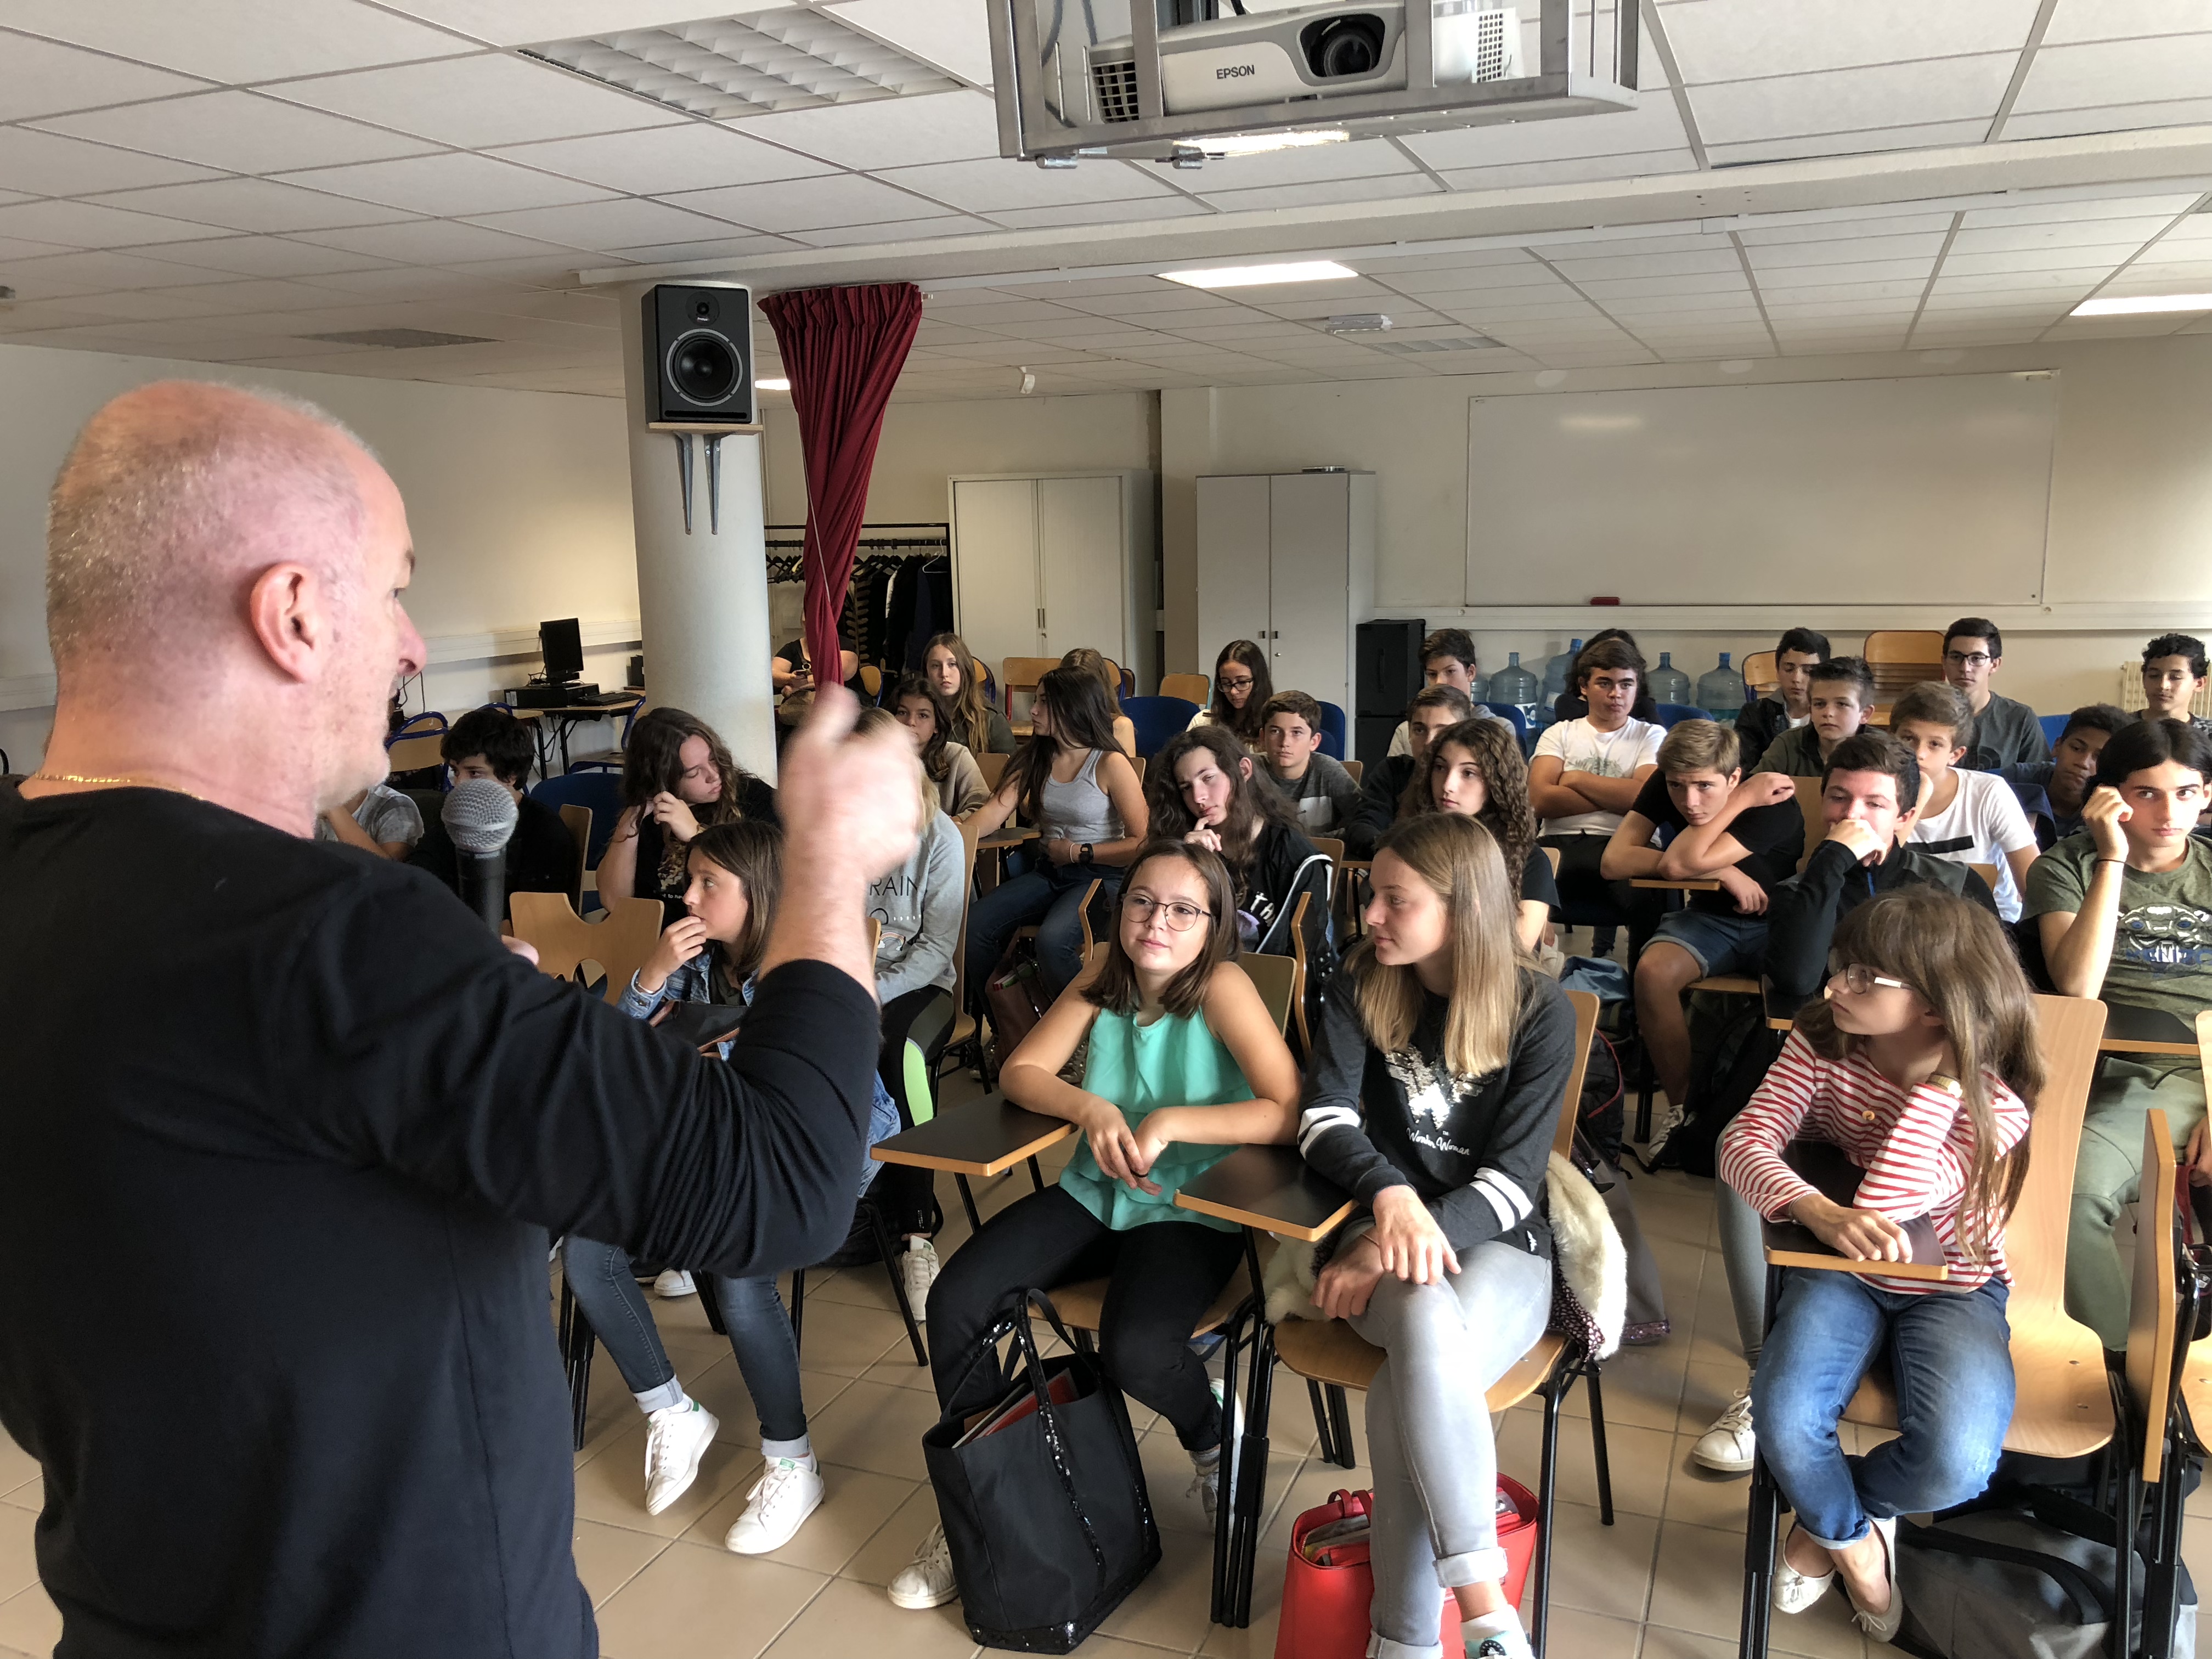 A Filetta rencontre les élèves du collège Pascal Paoli de Lisula